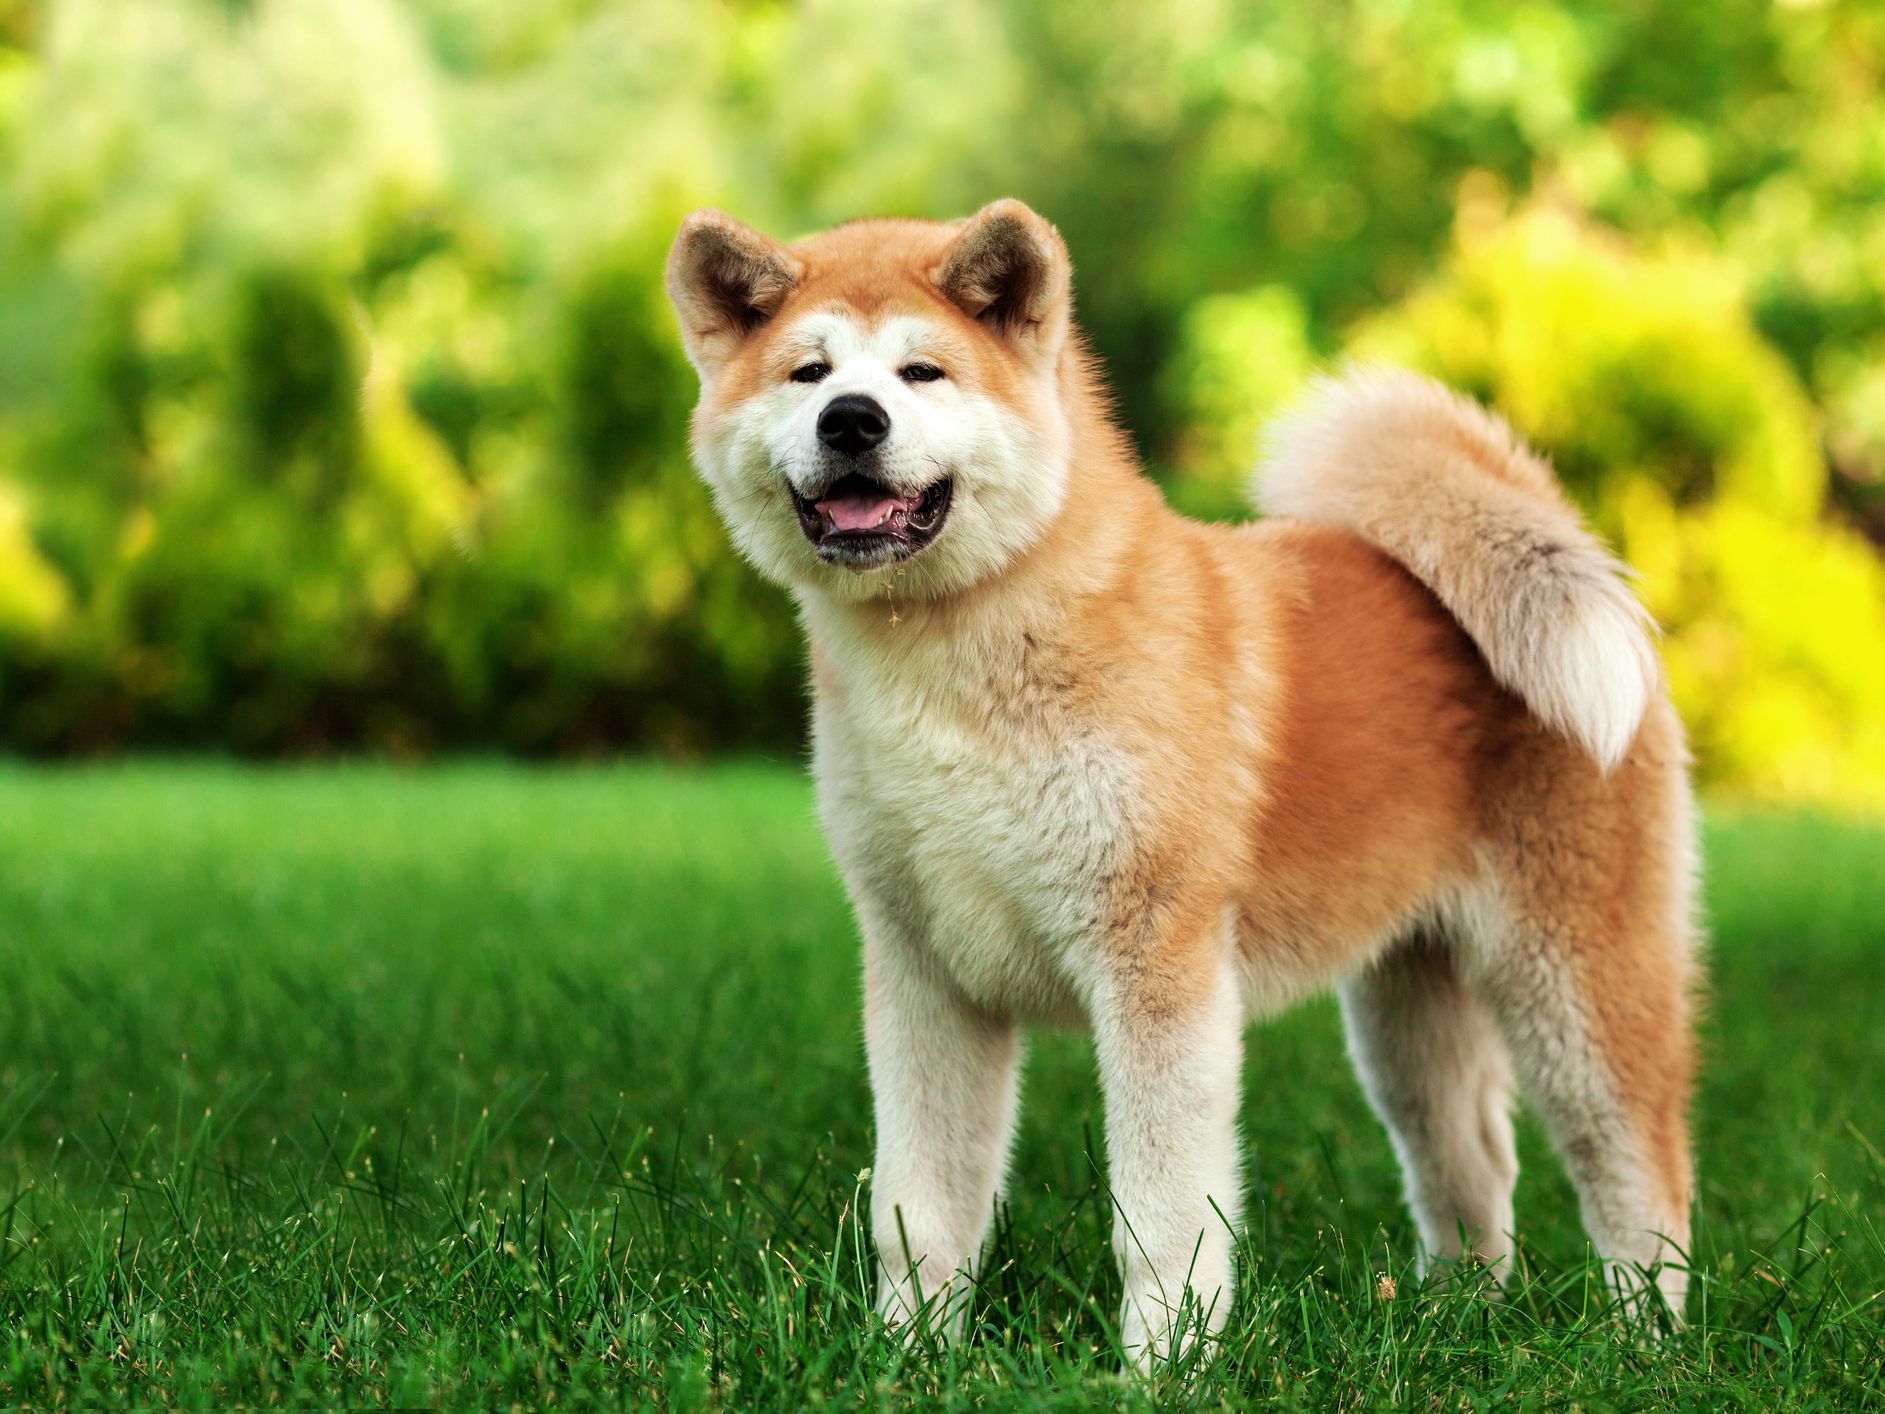 รู้จัก ชิบะ อินุ (Shiba Inu) หมาสัญชาติญี่ปุ่นแสนน่ารัก